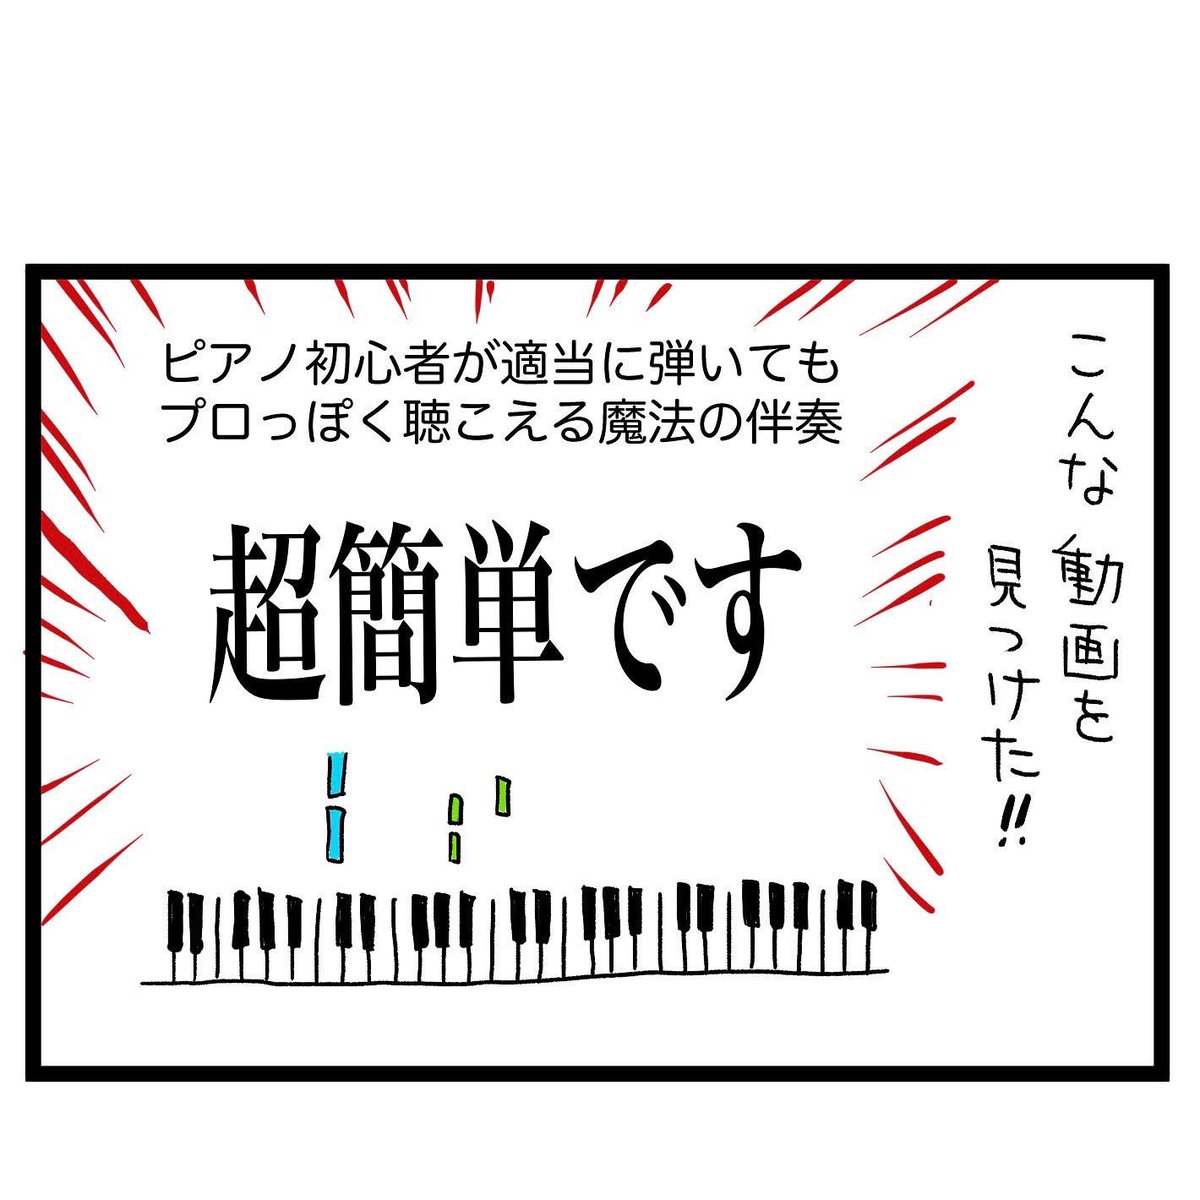 #四コマ漫画
#ピアノ
ピアノ初心者 